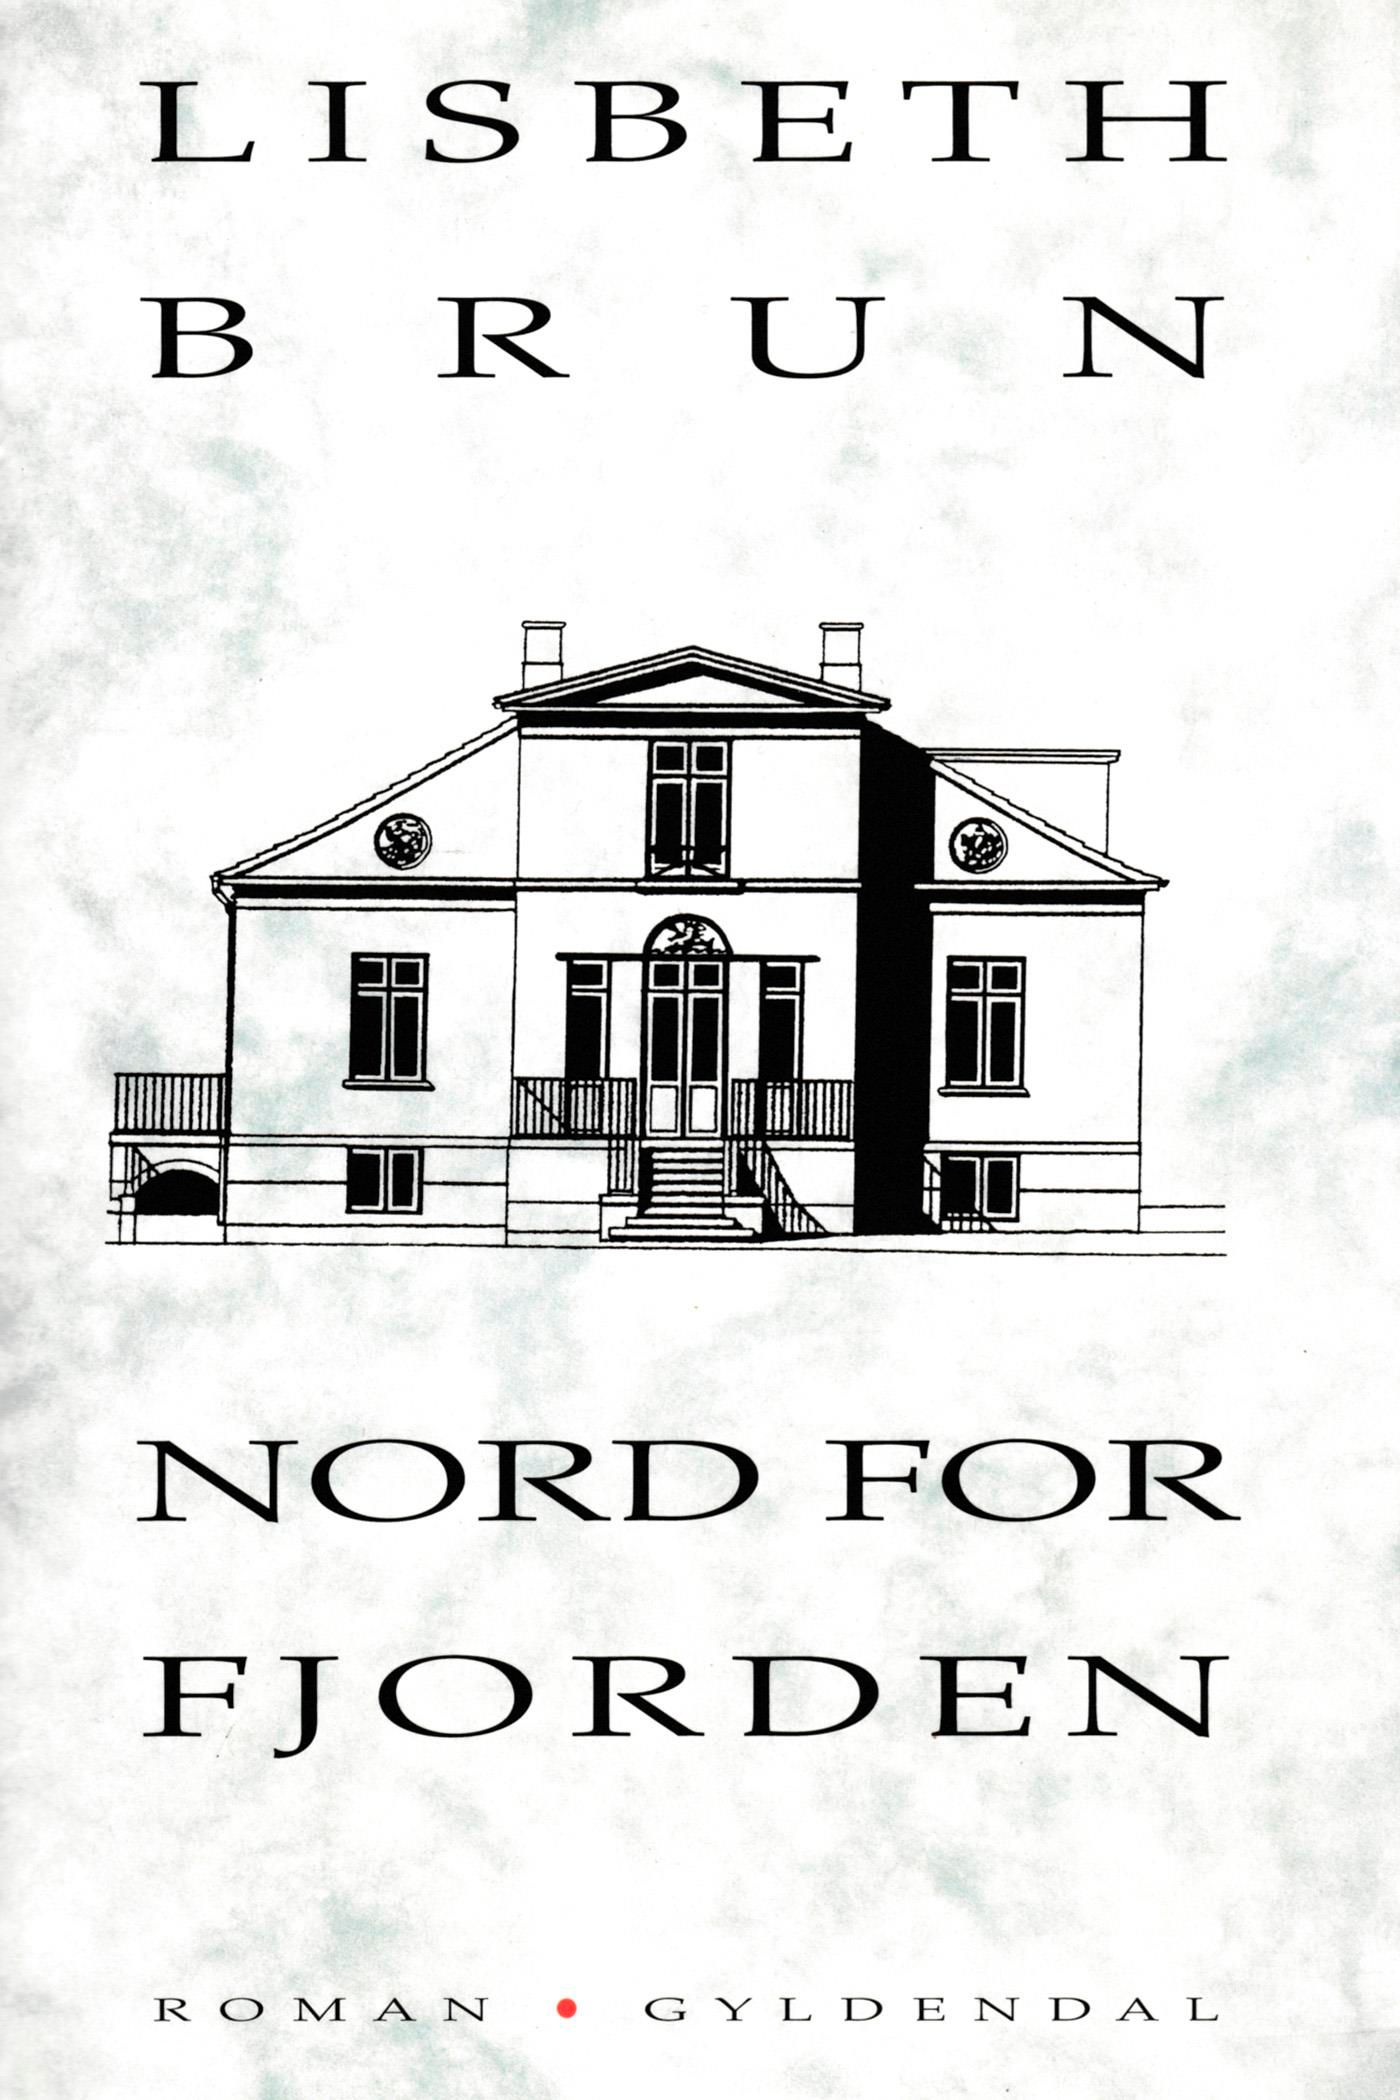 Nord for fjorden, e-bog af Lisbeth Brun